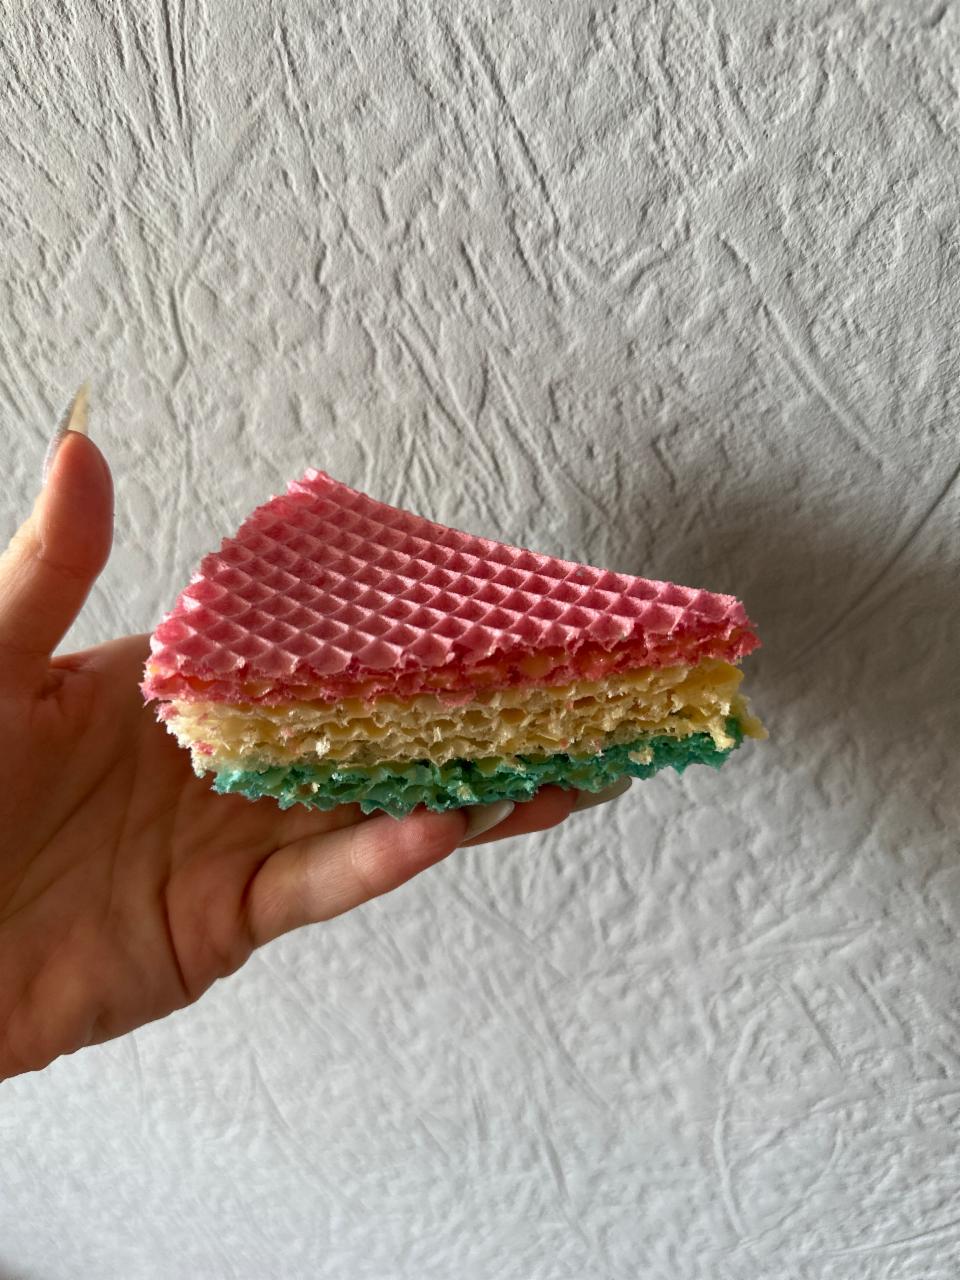 Фото - Коржі вафельні для торта Чарівні кольори LEKORNA